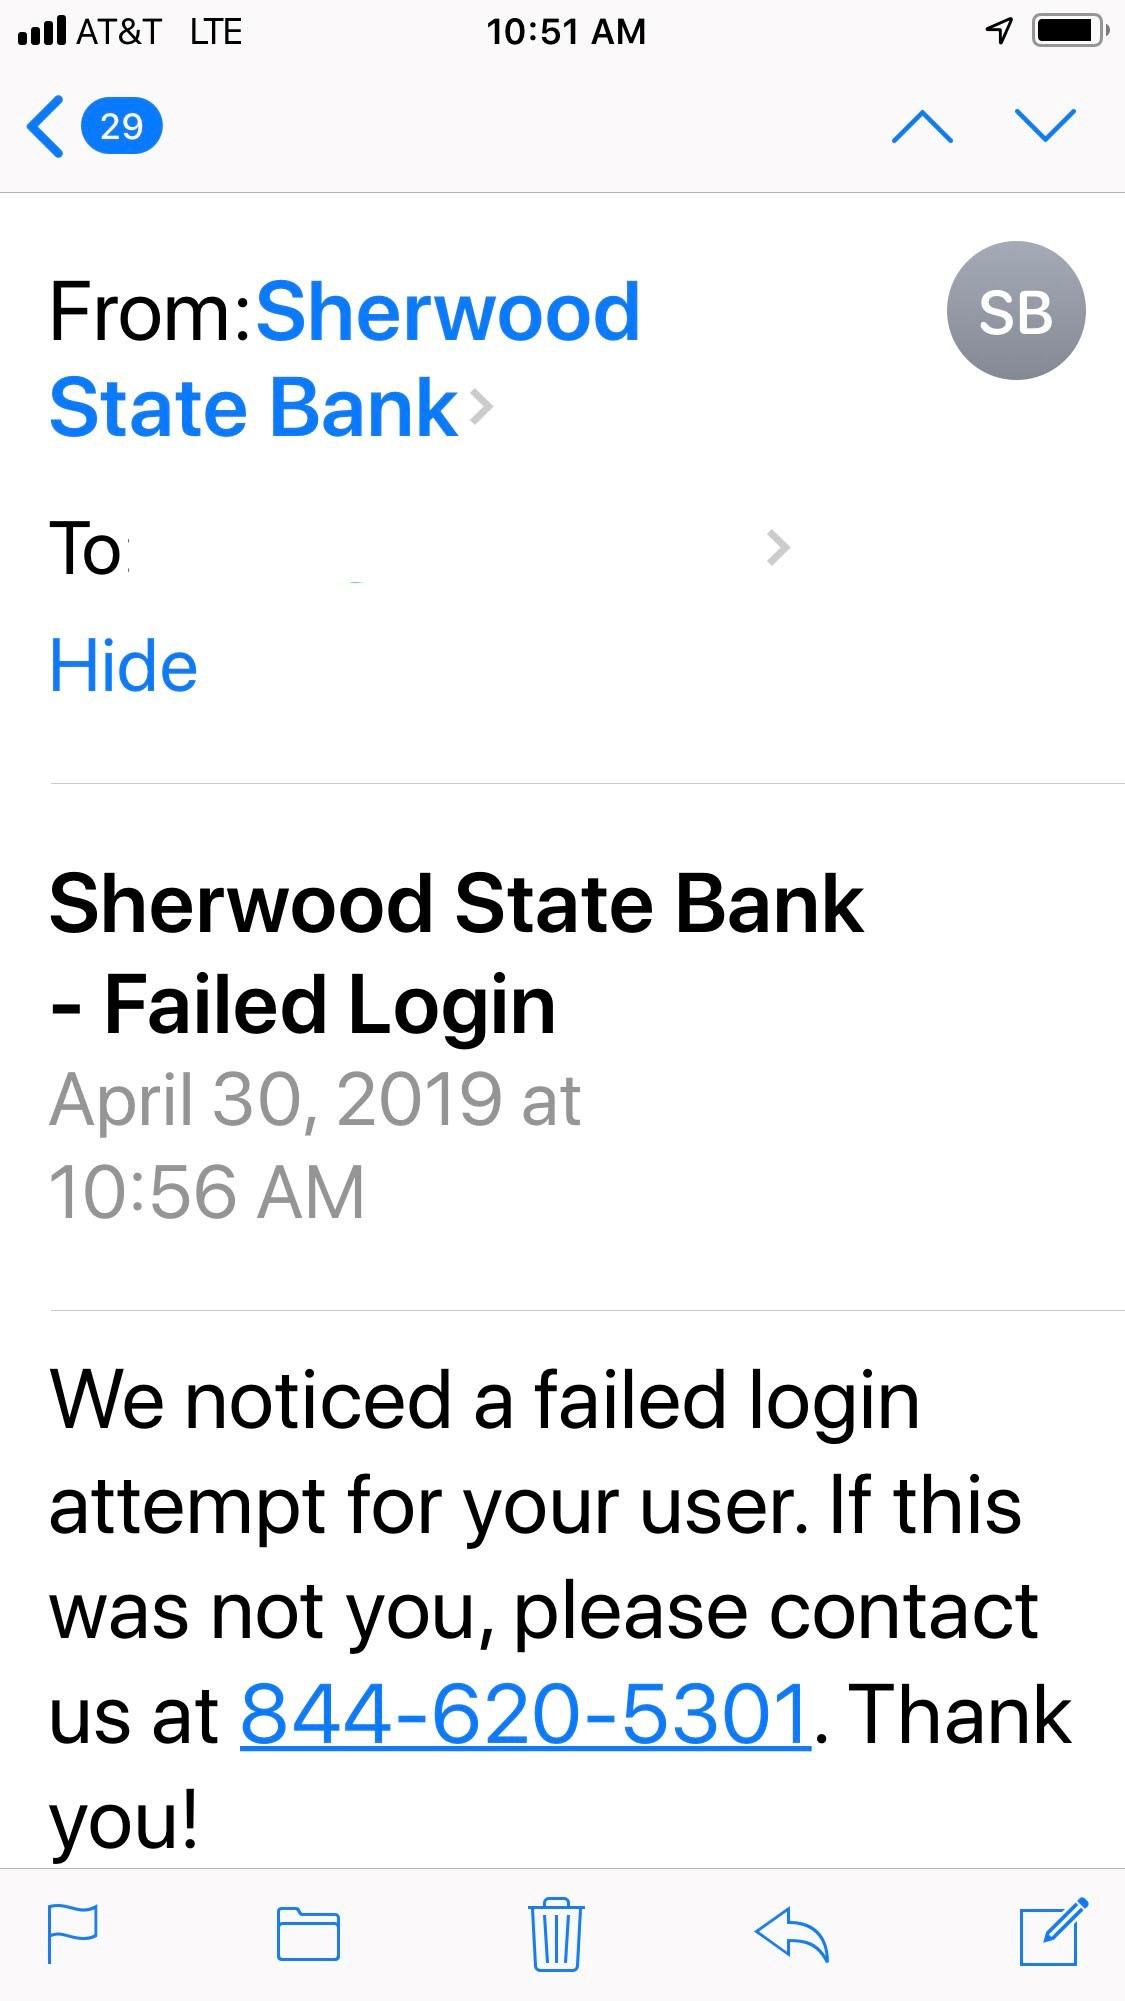 Sherwood State bank failed login notification